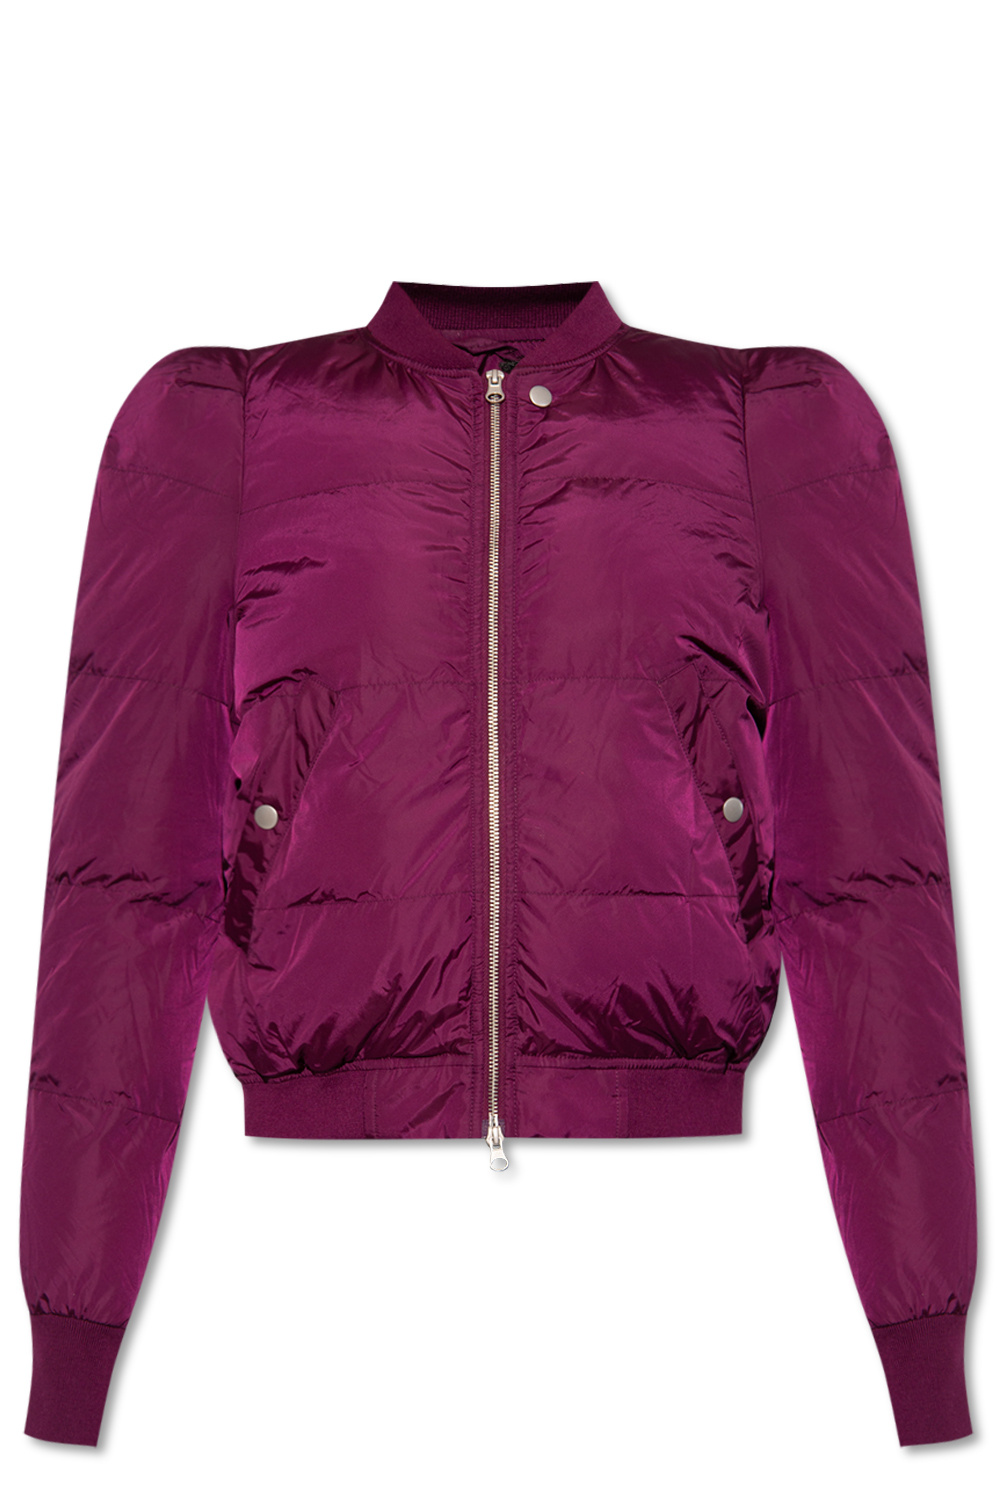 Purple ‘Cody’ bomber jacket Isabel Marant - Vitkac Germany